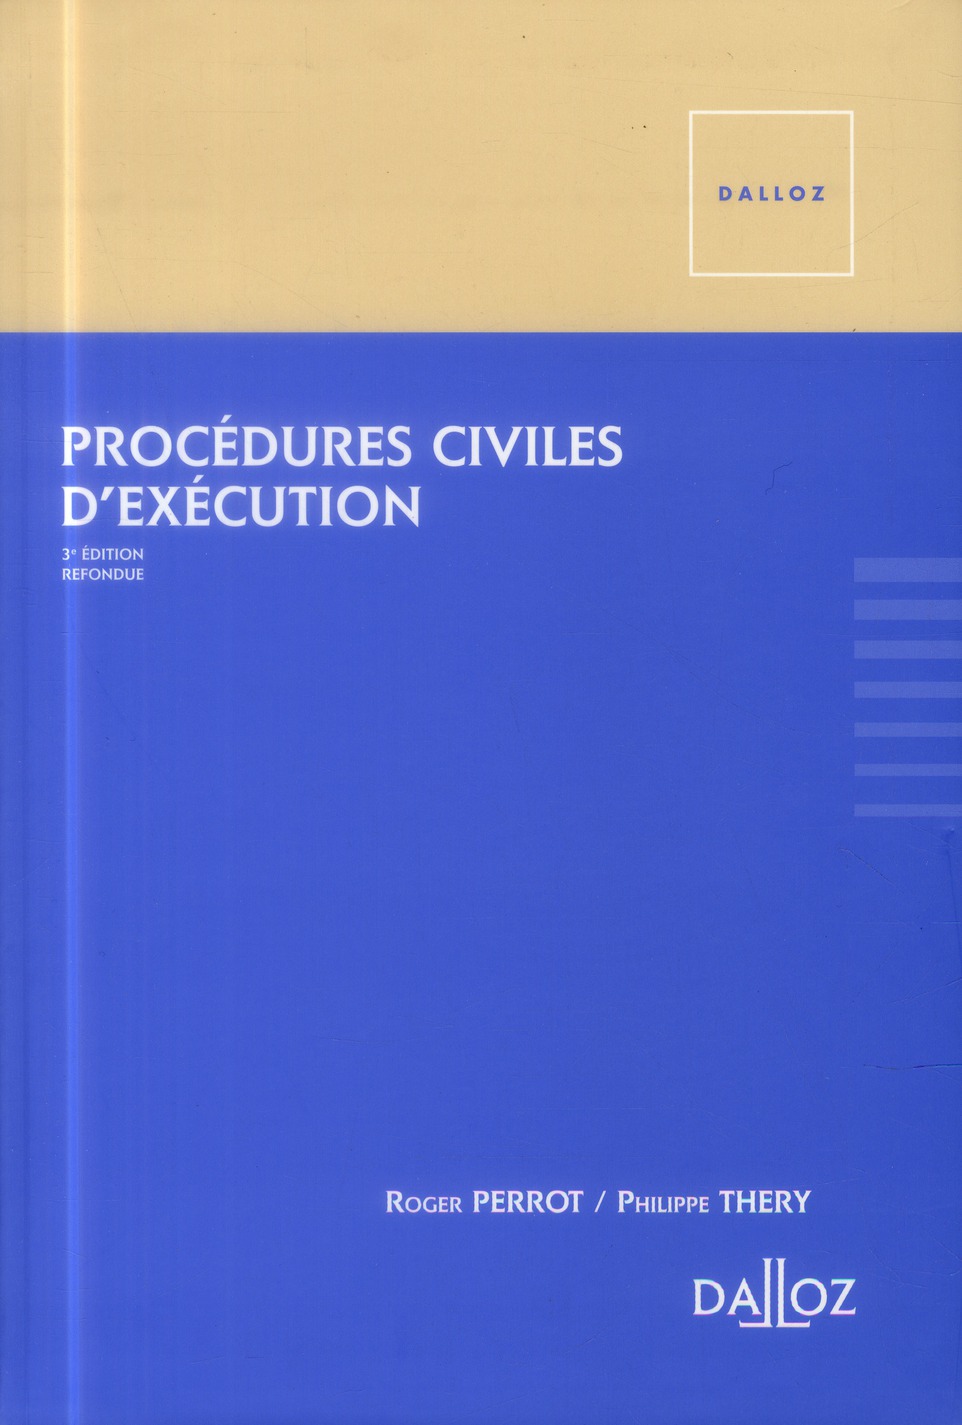 PROCEDURES CIVILES D'EXECUTION 3E